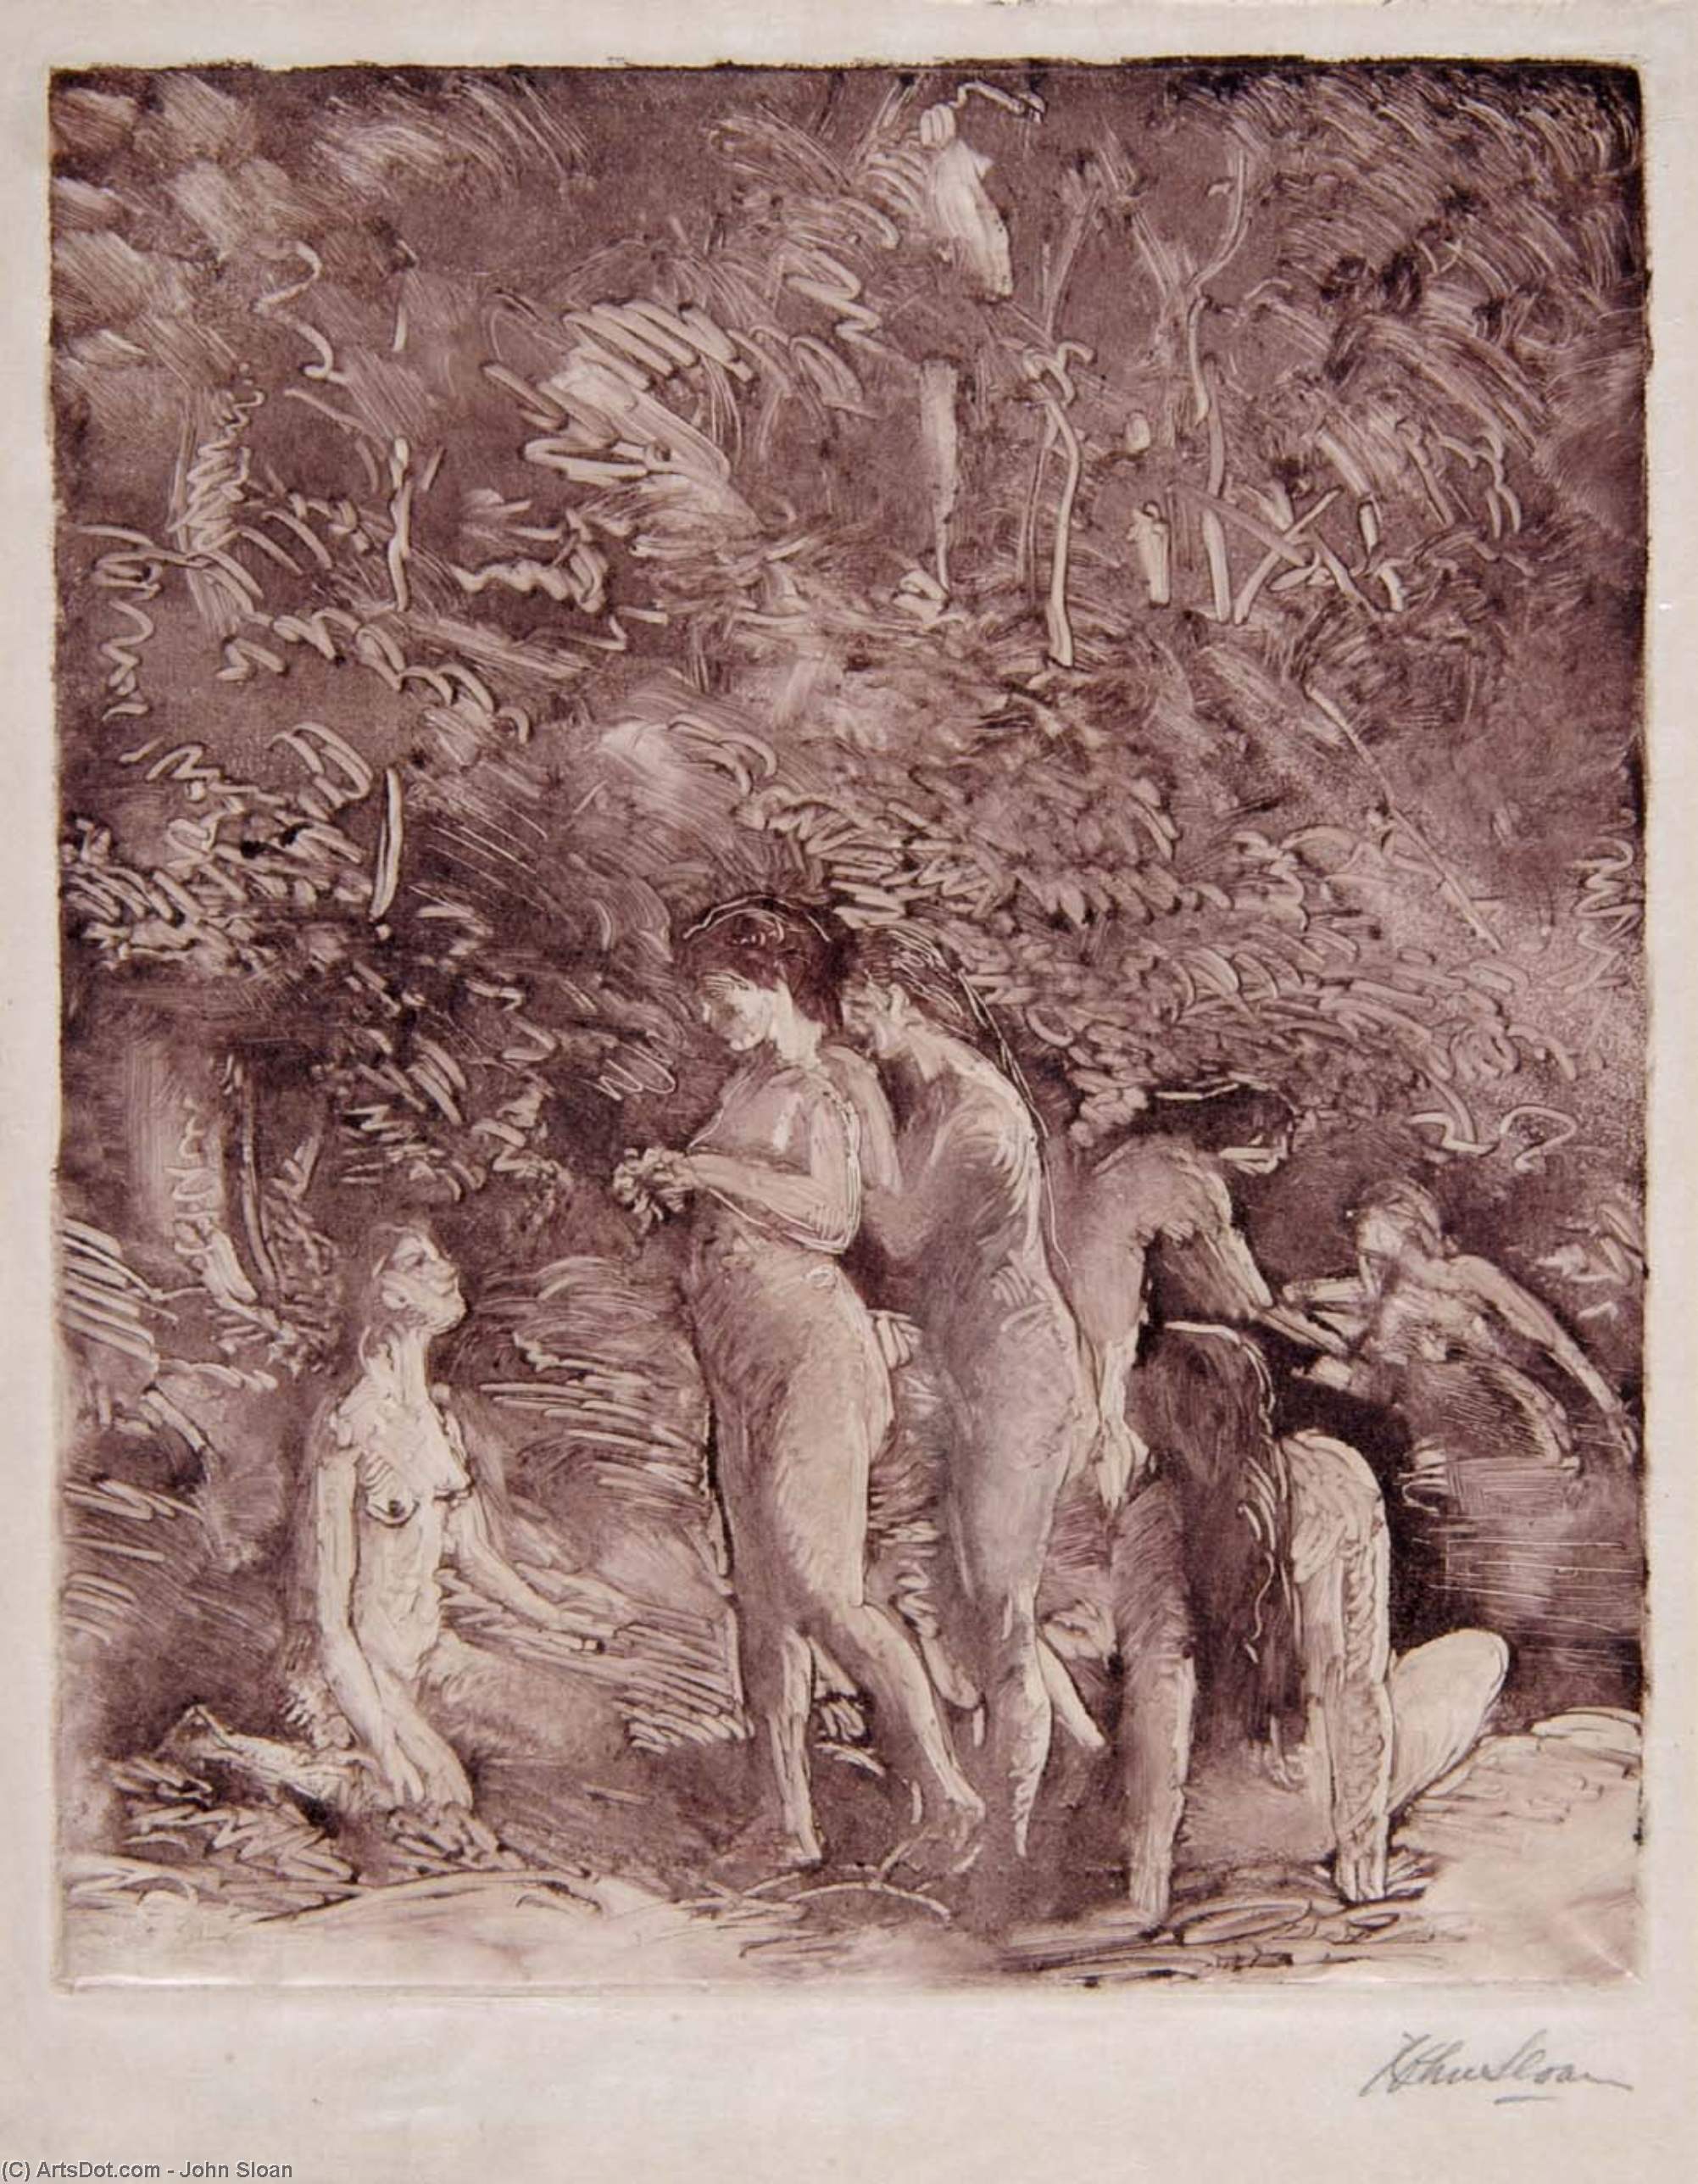 WikiOO.org - Encyclopedia of Fine Arts - Maleri, Artwork John Sloan - Bathers